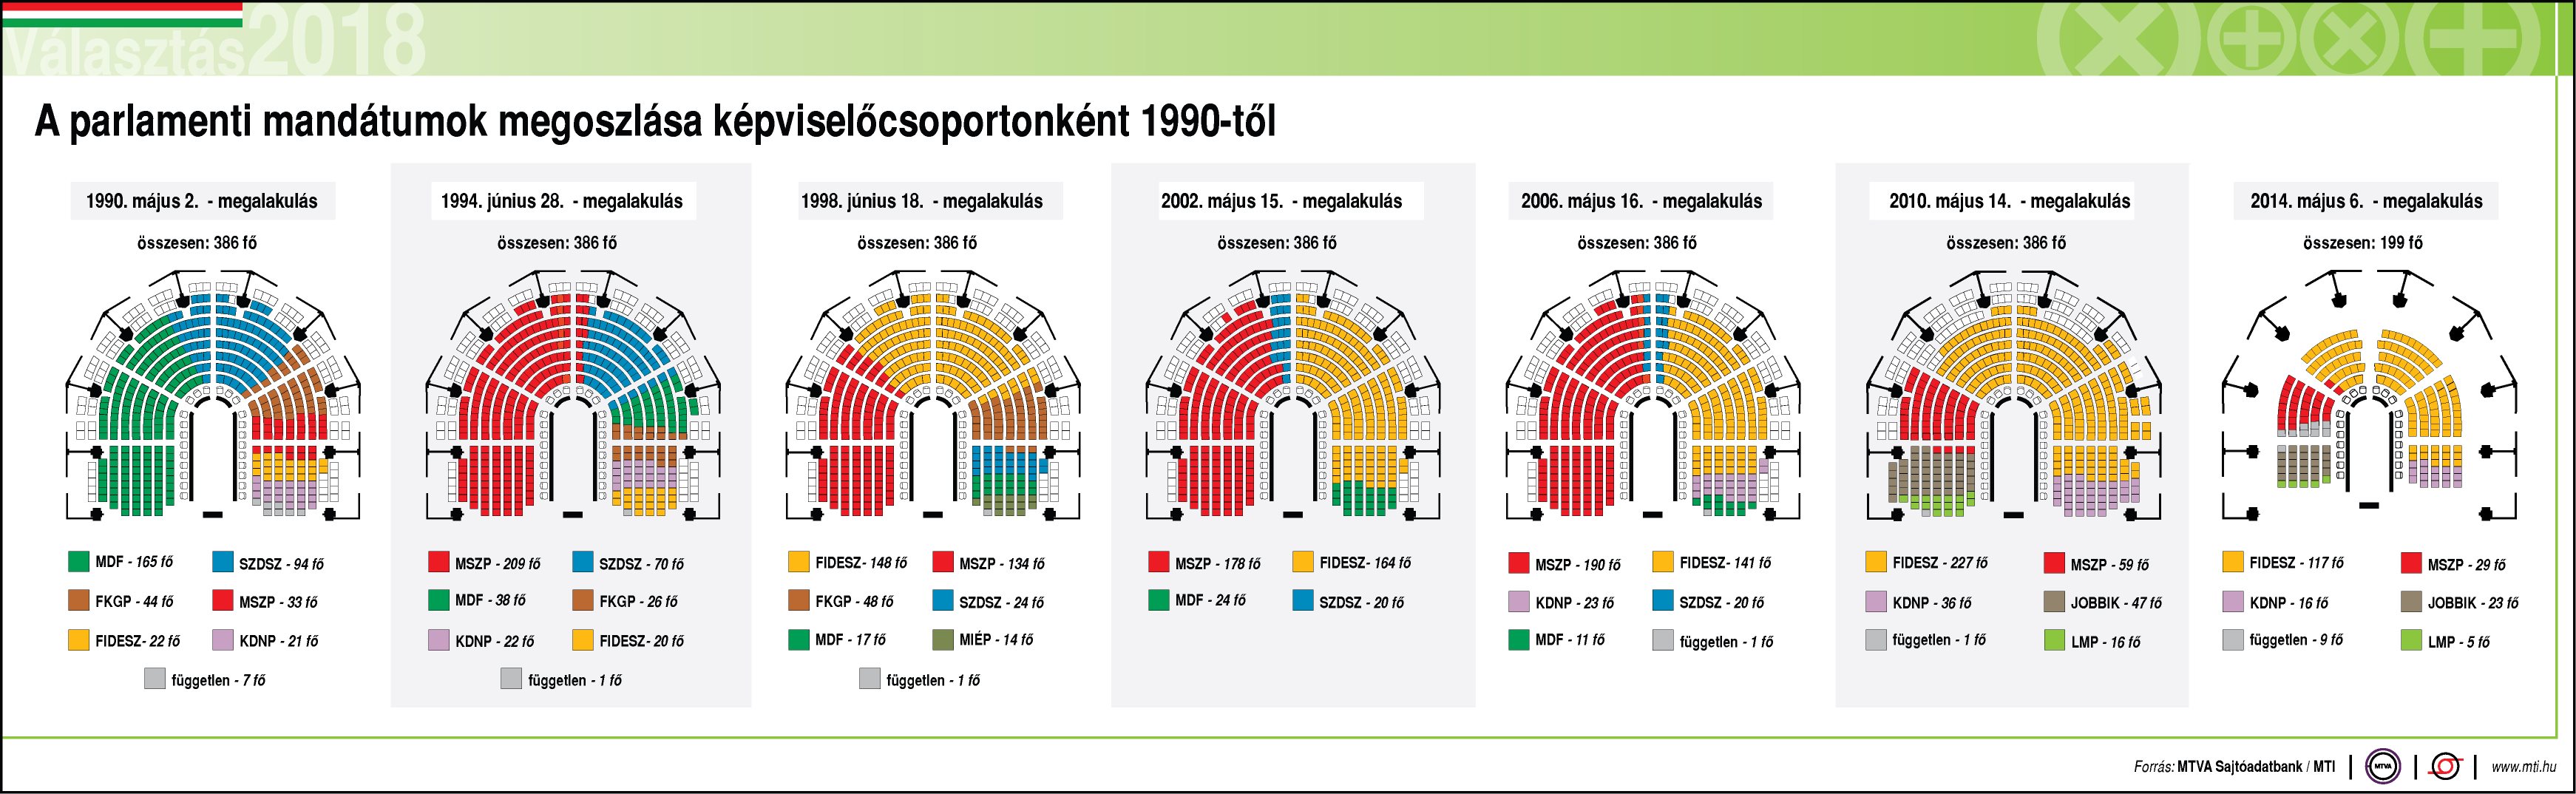 A parlamenti mandátumok megoszlása (1990-2014) kattintásra nagyobb méretben látható.